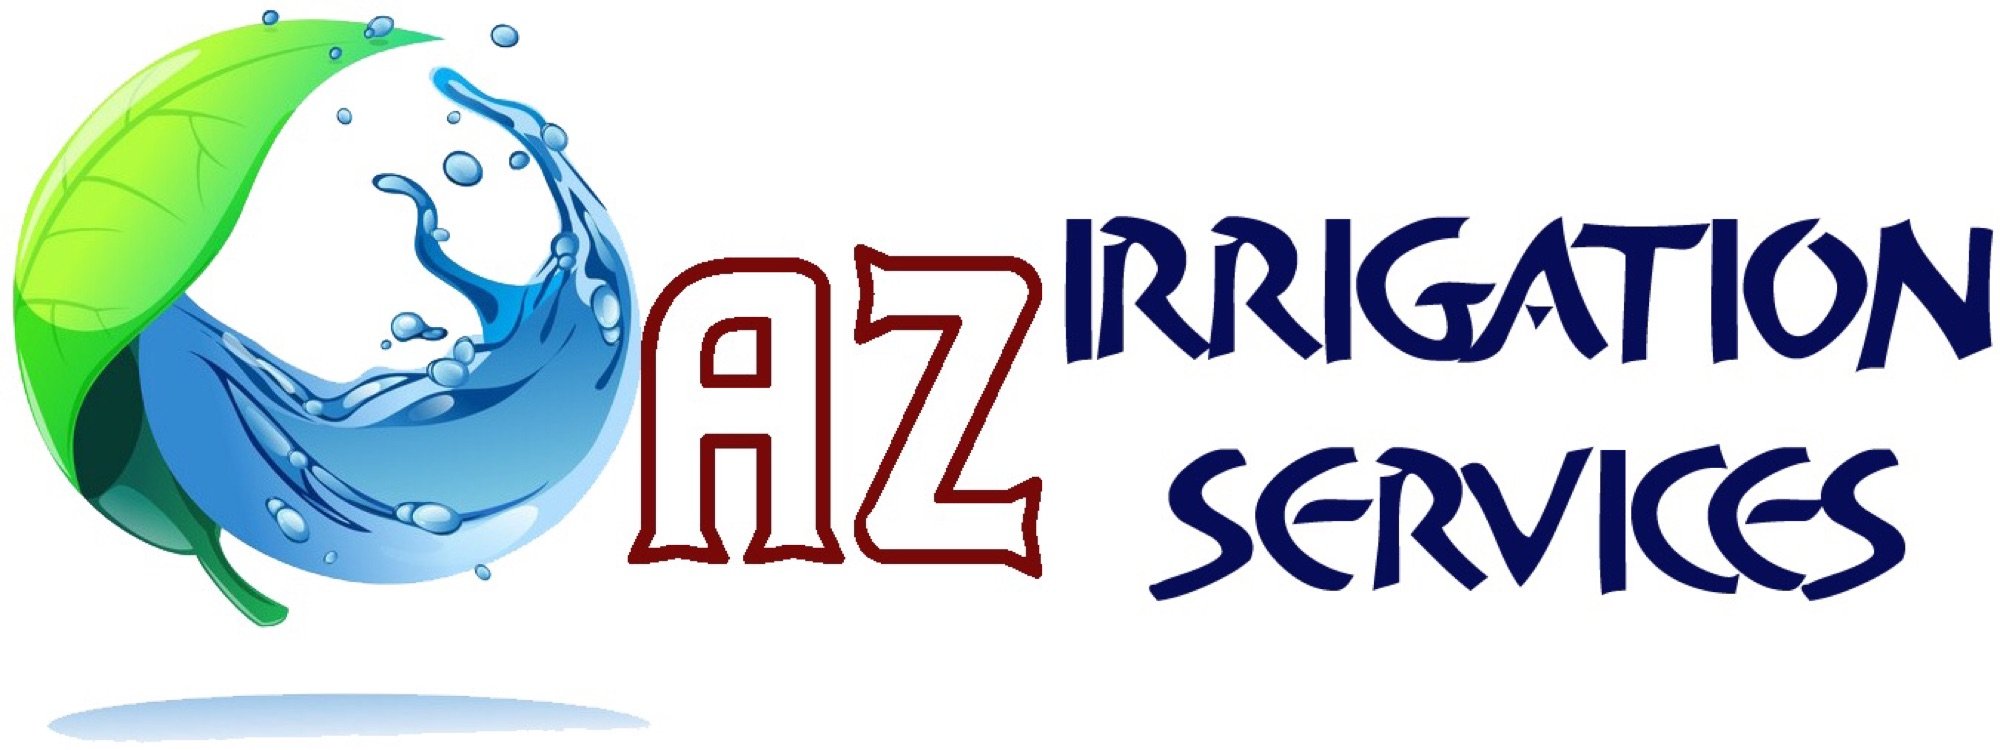 AZ Irrigation Services, LLC Logo